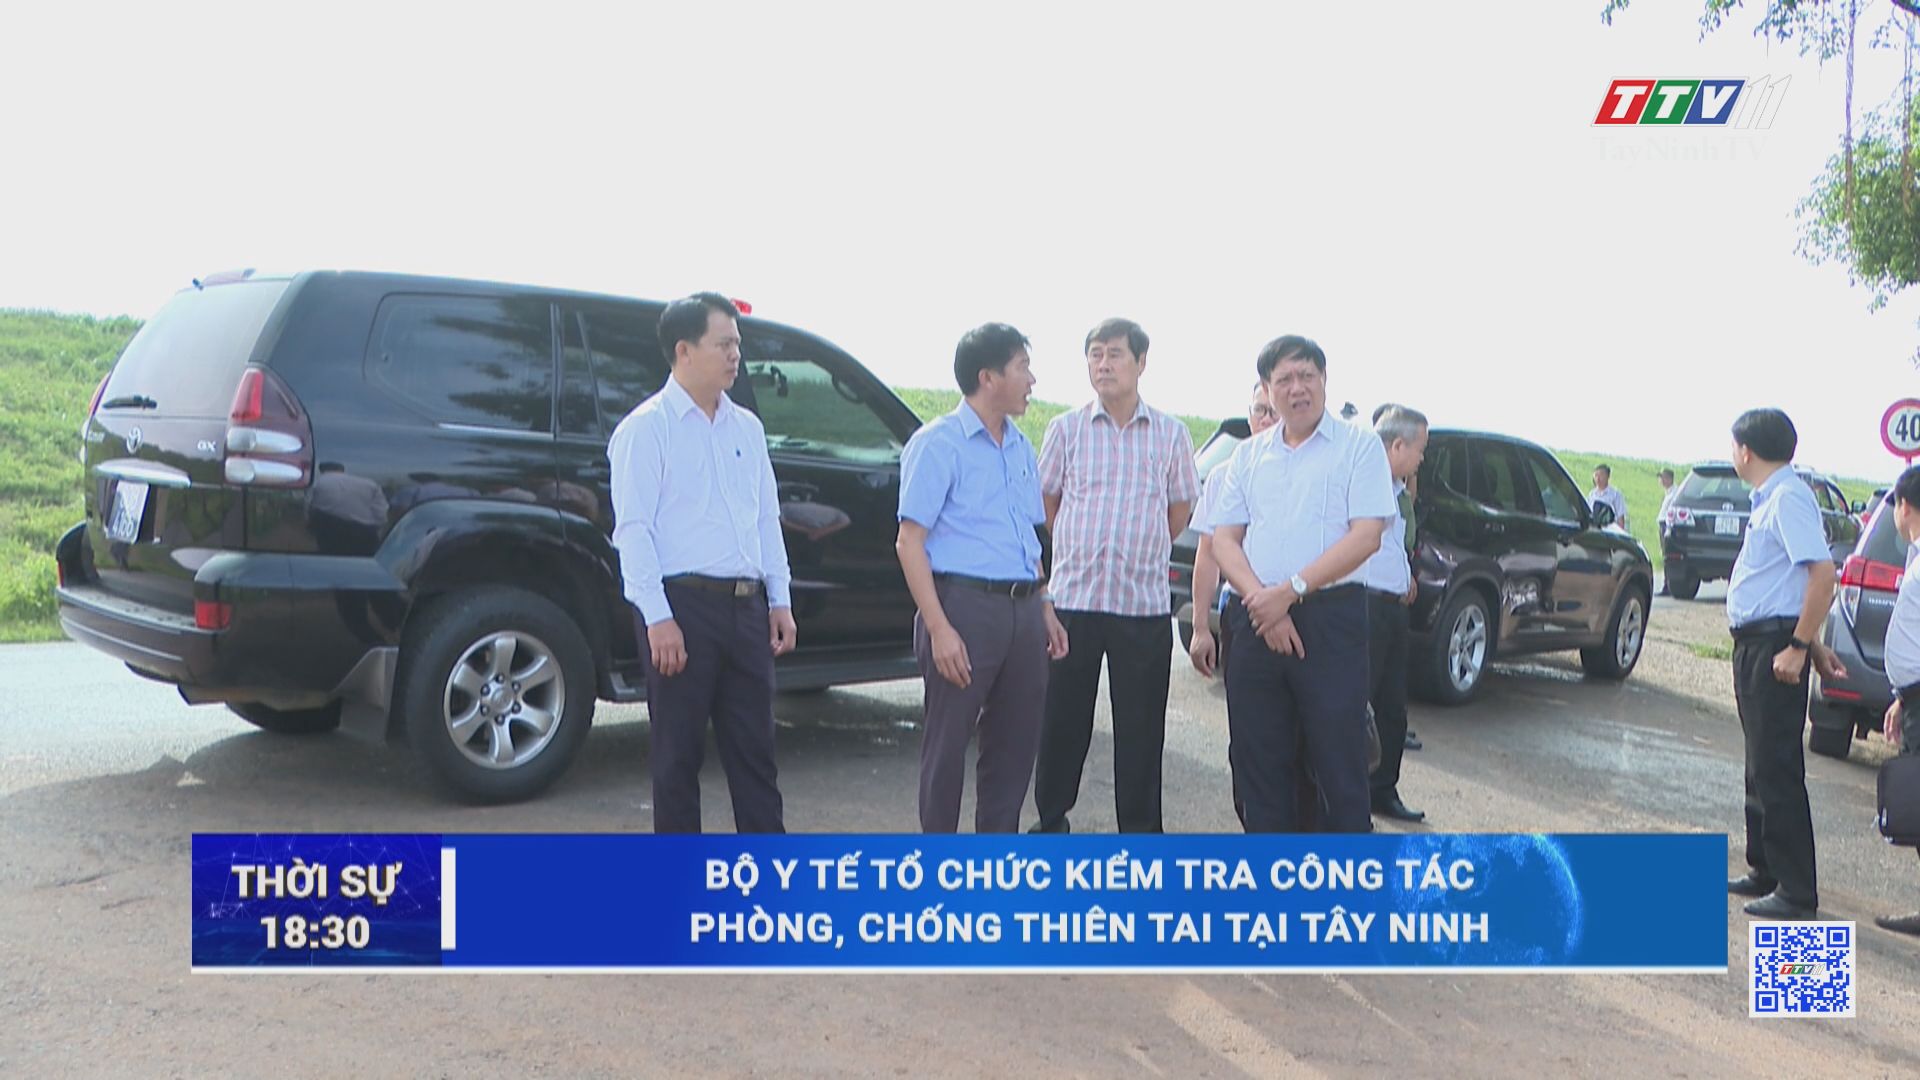 Bộ Y tế kiểm tra công tác phòng, chống thiên tai tại Tây Ninh | TayNinhTV